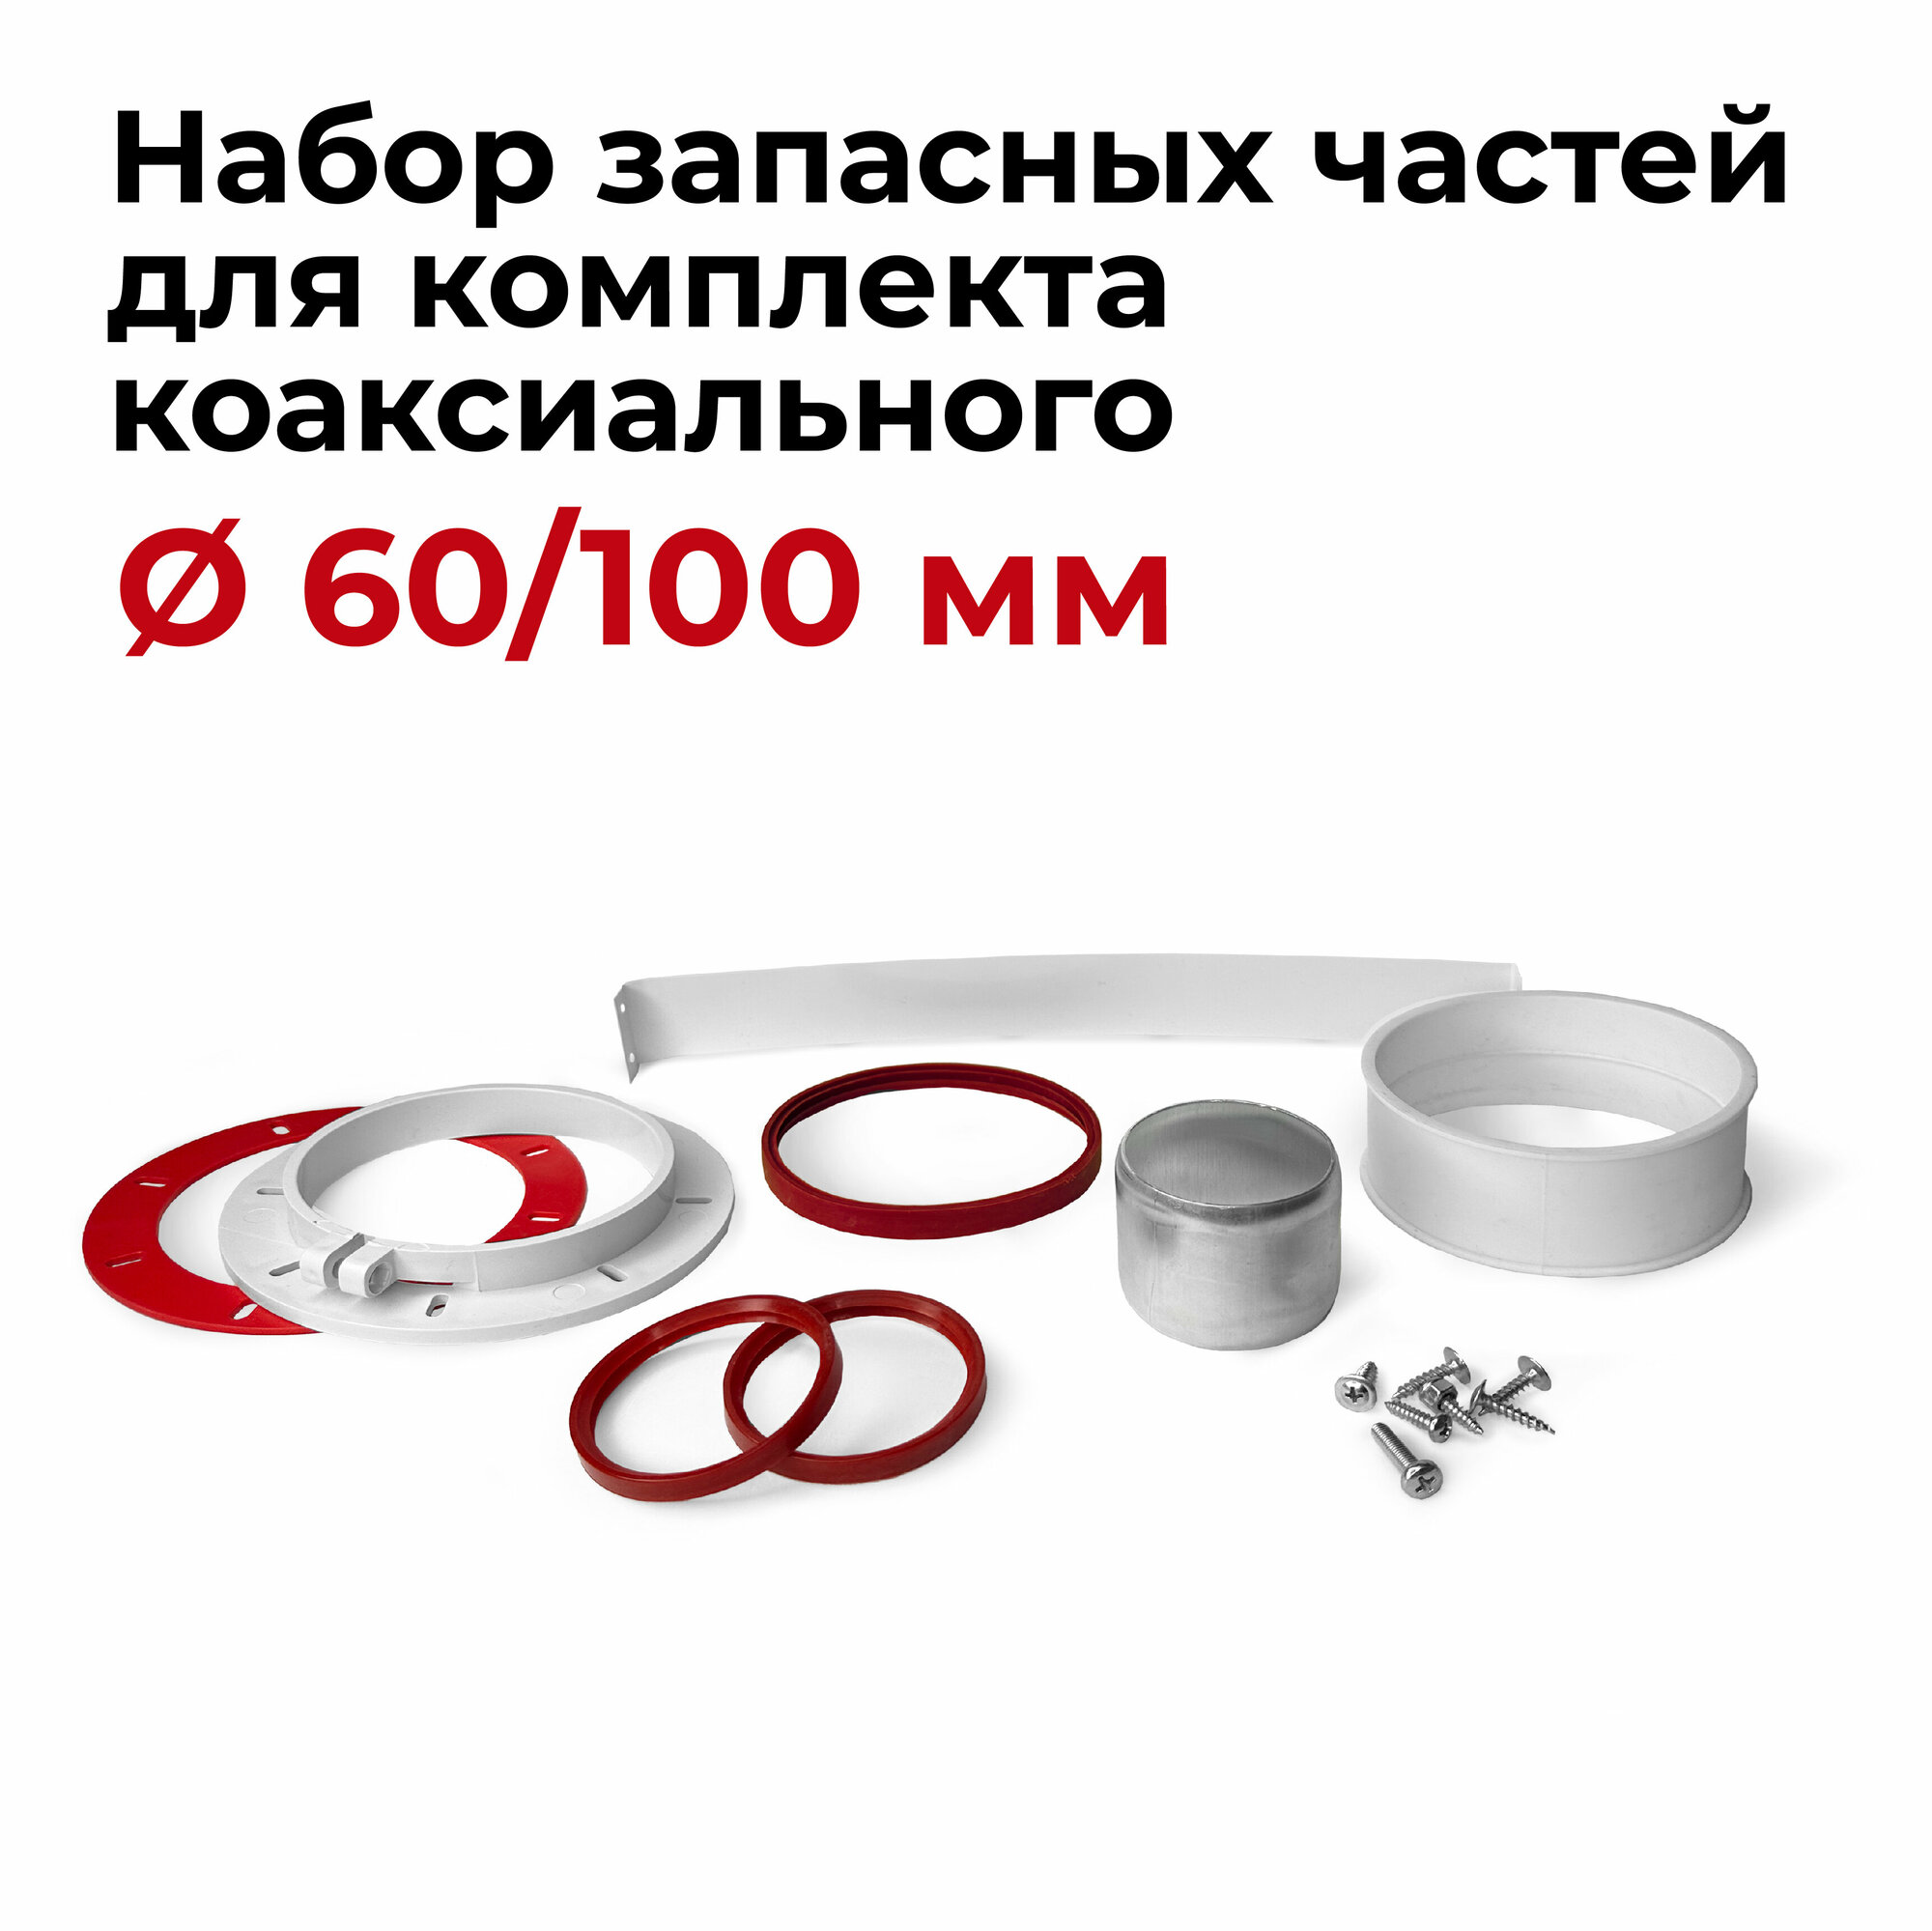 Набор запасных частей для комплекта коаксиального 60/100 мм 